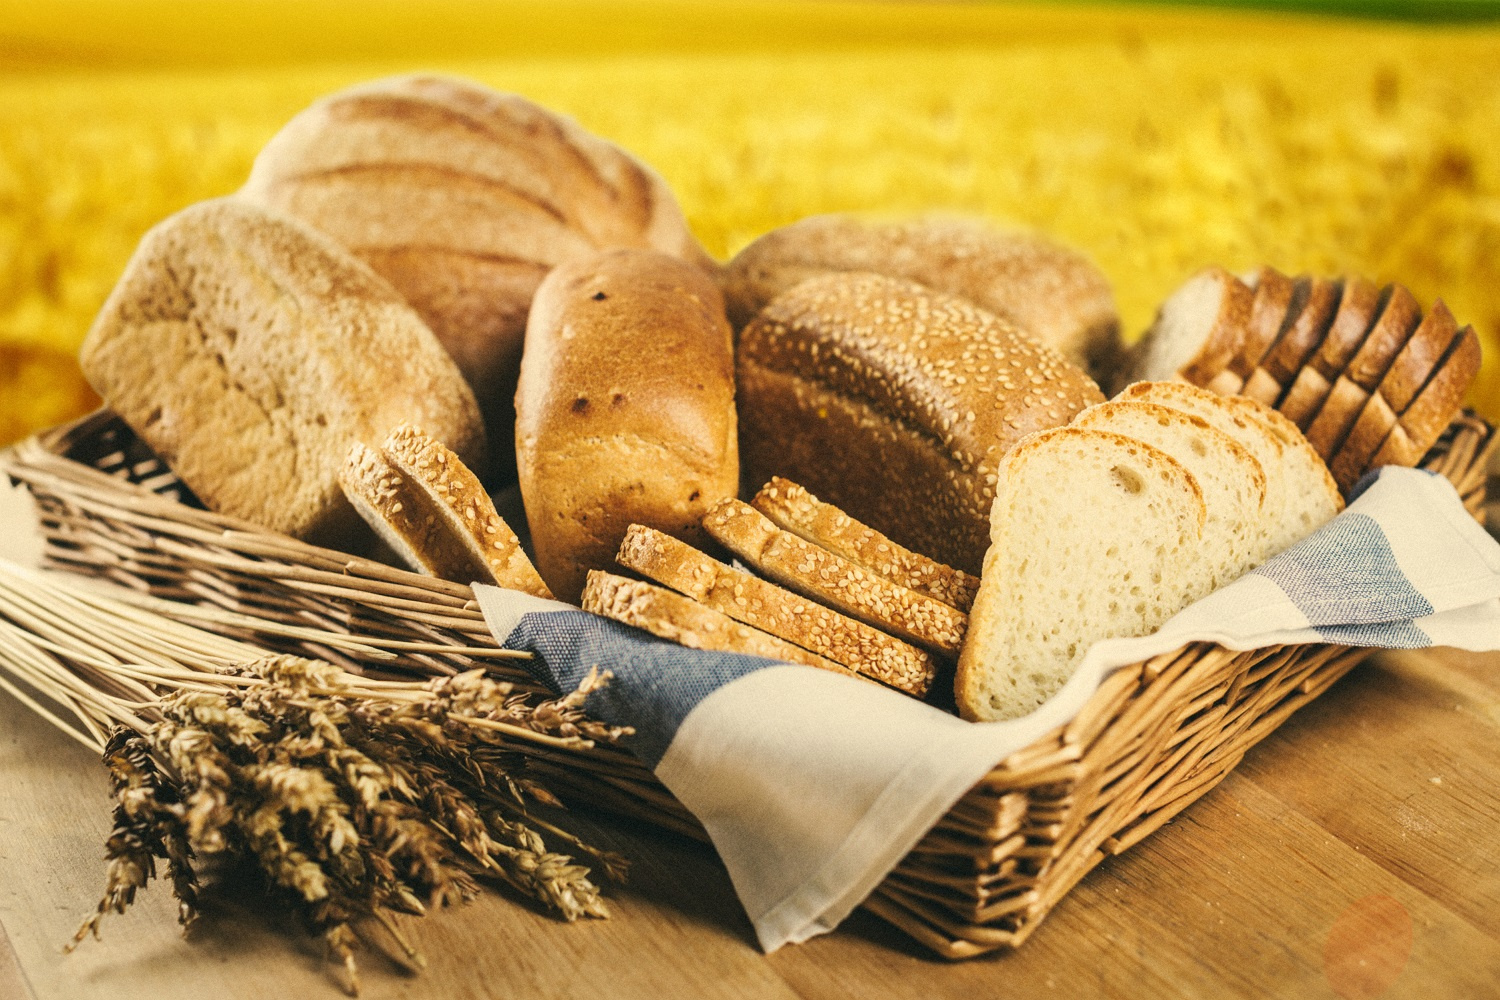 Собранный хлеб 4. Хлеб и хлебобулочные изделия. Производители хлеба и хлебобулочных изделий. Хлебобулочная промышленность. Хлеб и продукты хлебопекарной промышленности.